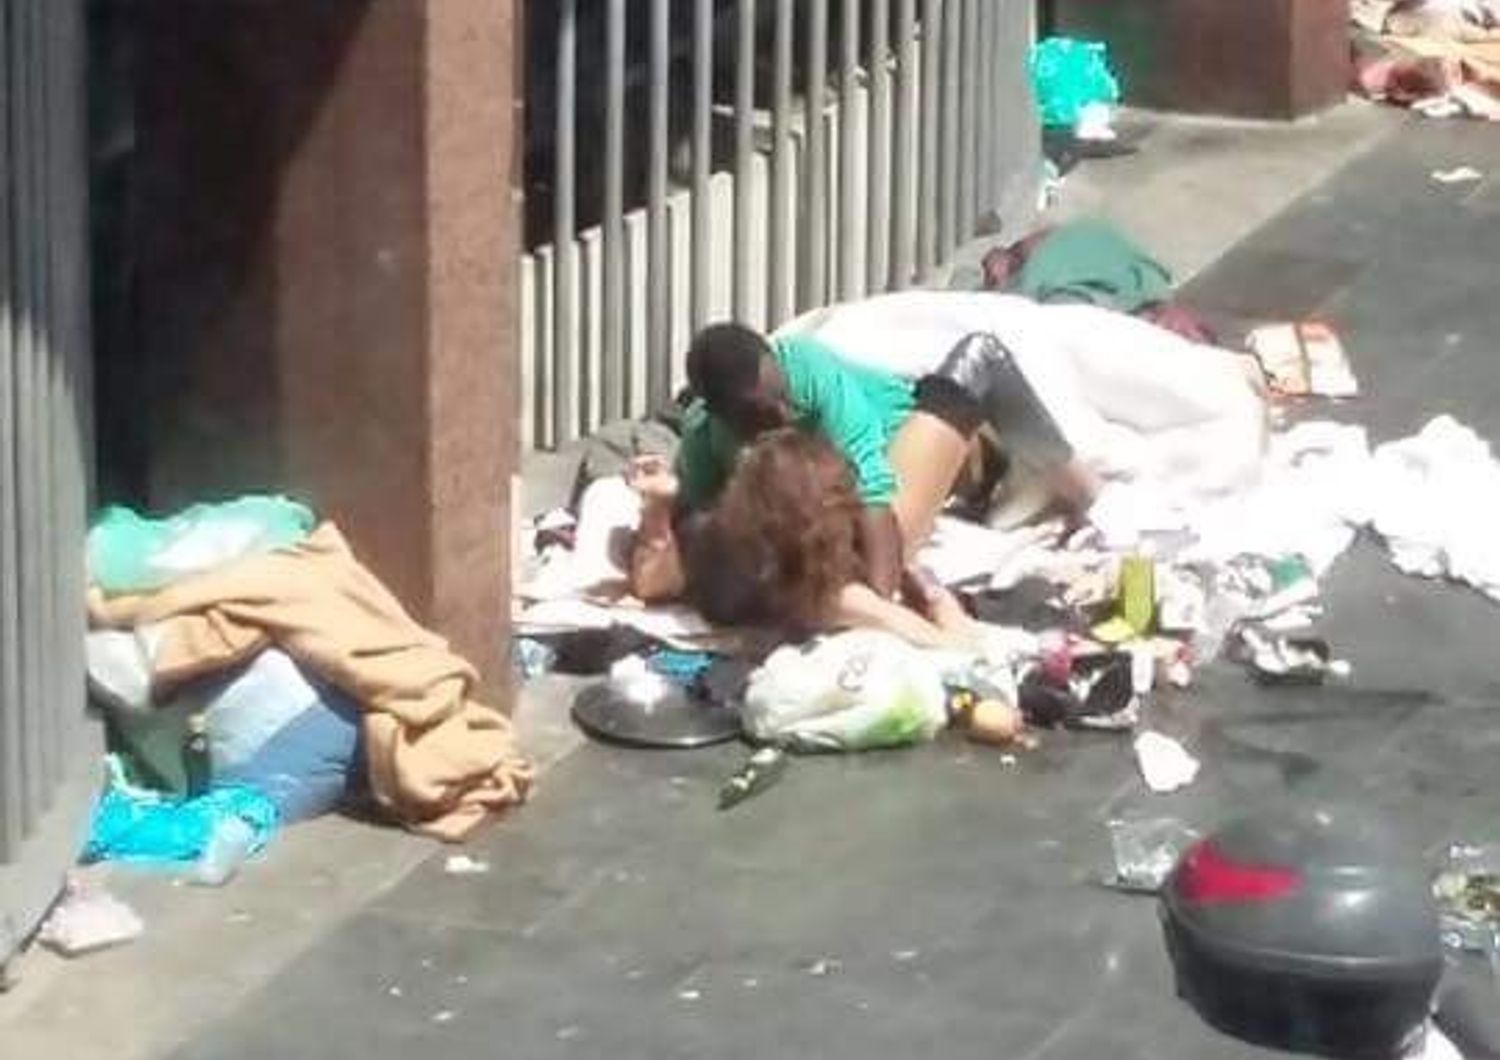 Piazza indipendenza sesso tra i rifiuti (Roma fa schifo)